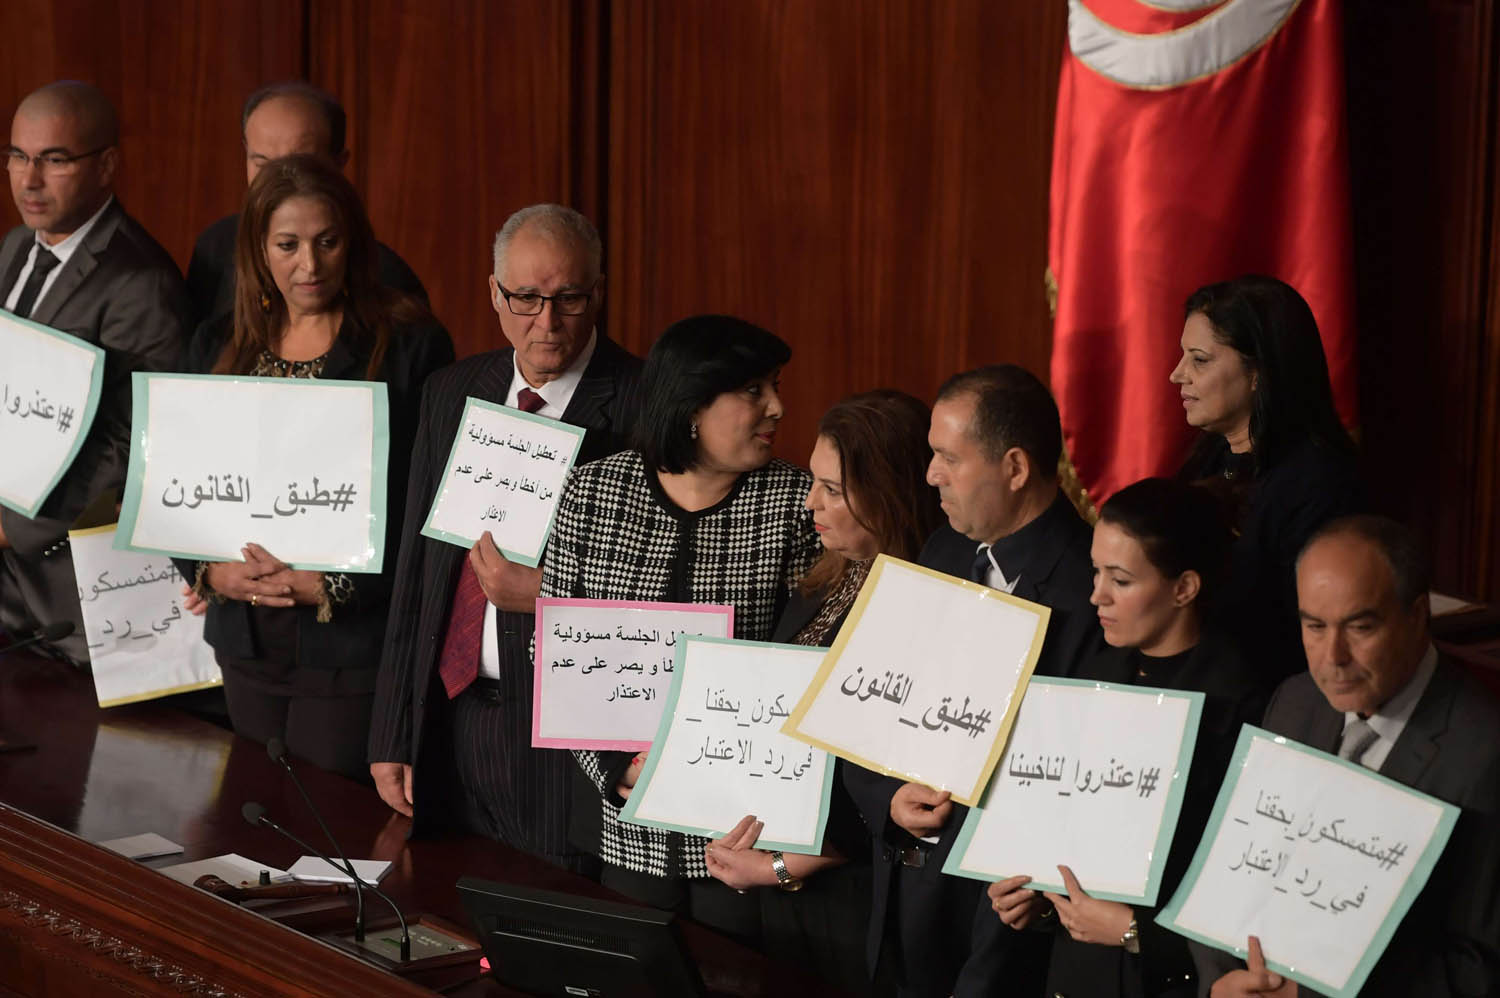 النائبة عبير موسي وسط مجموعة من النواب يحتجون على تعطيل جلسة برلمانية